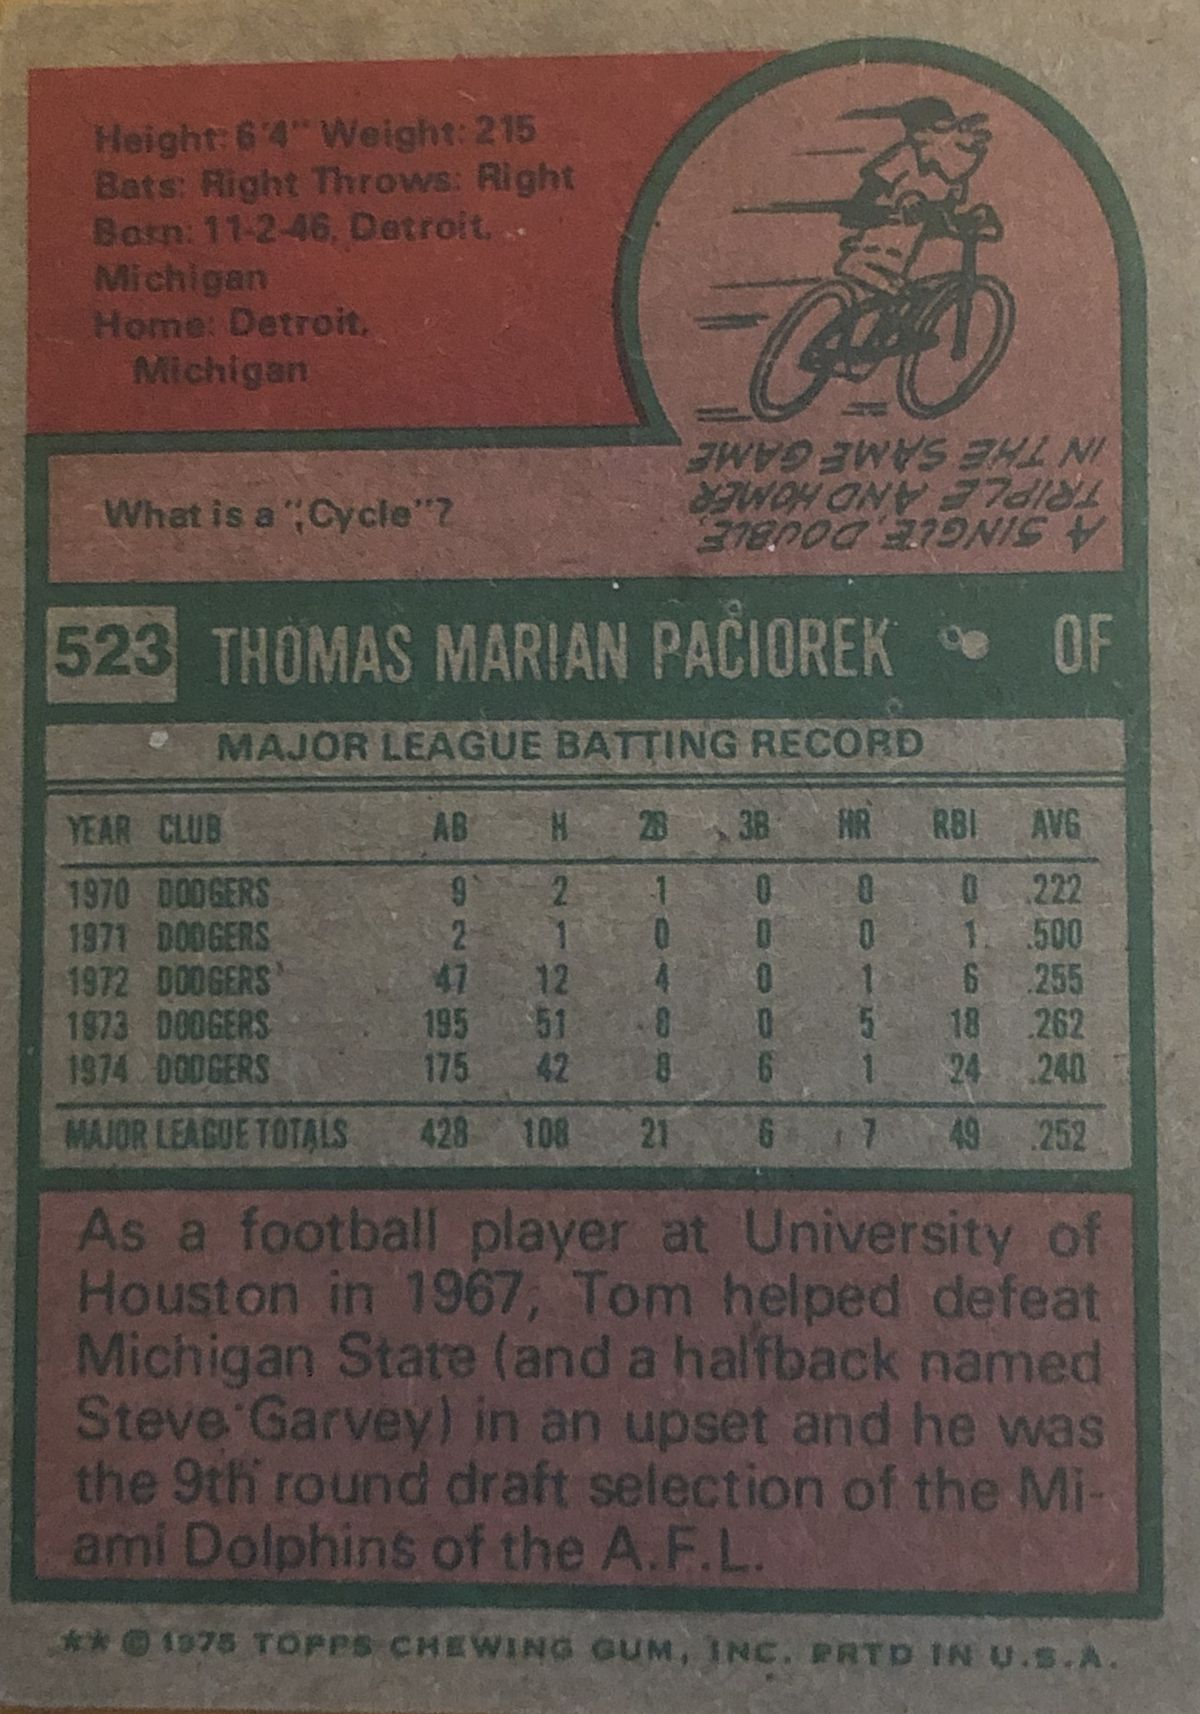 The back of Tom Paciorek’s 1975 Topps baseball card.